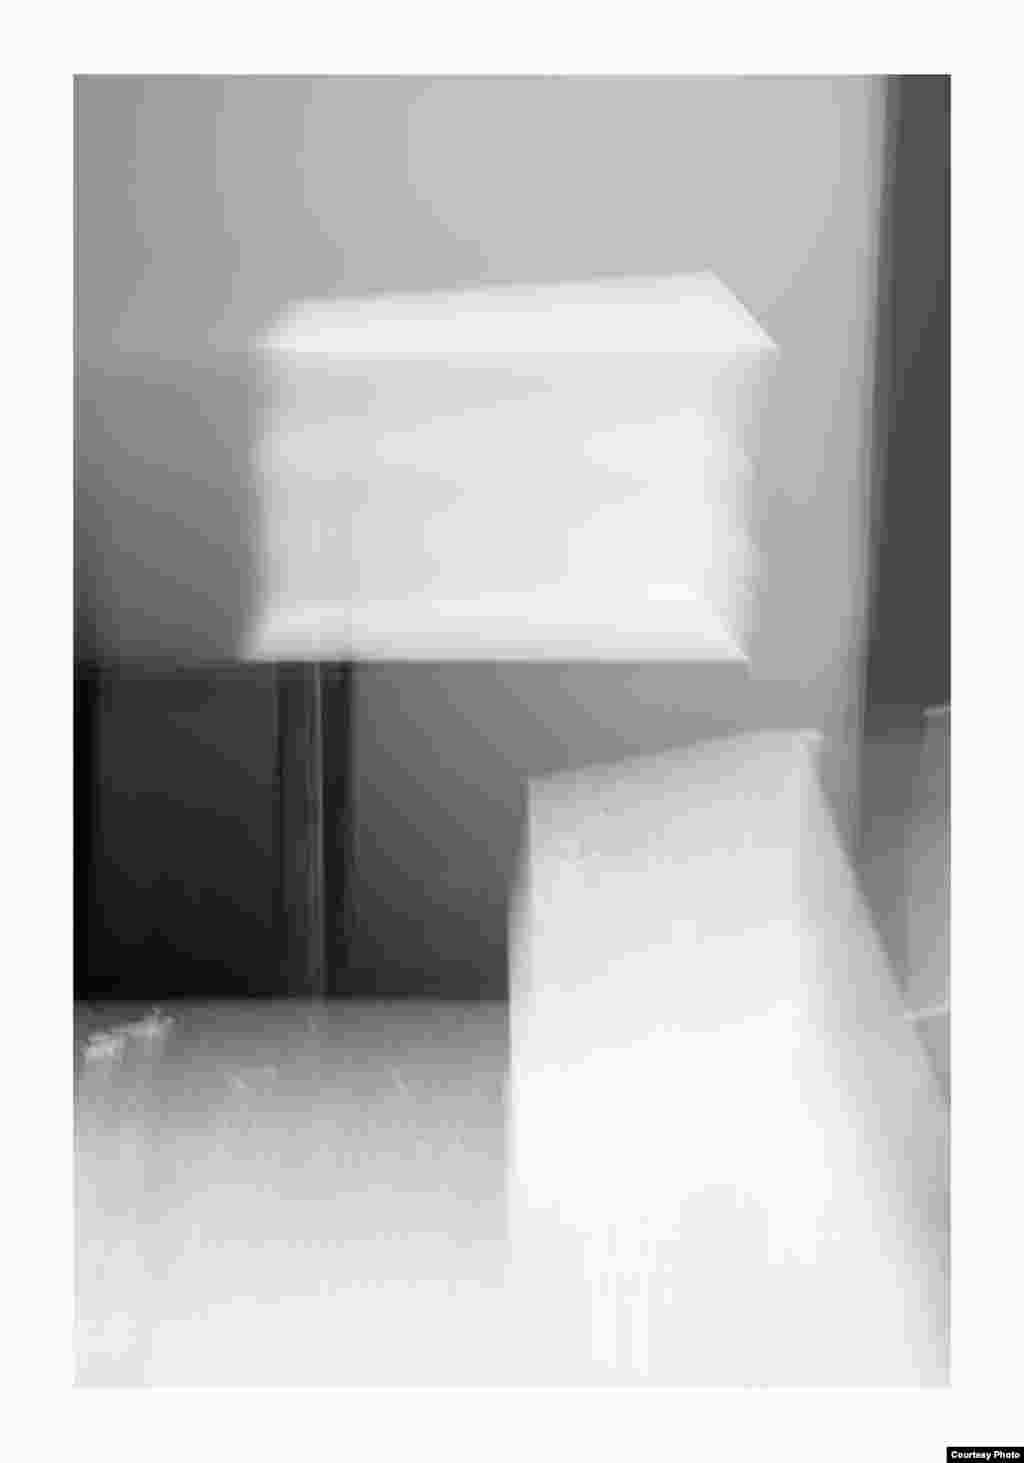 ნათელი მაგიდა. 2016 წელი. ფოტოქაღალდი, შავ-თეთრი ბეჭდვა. მხატვრის და &quot;ჰაუზლერ კონტემპორარის&quot; &nbsp;(ციურიხი) ნებართვით